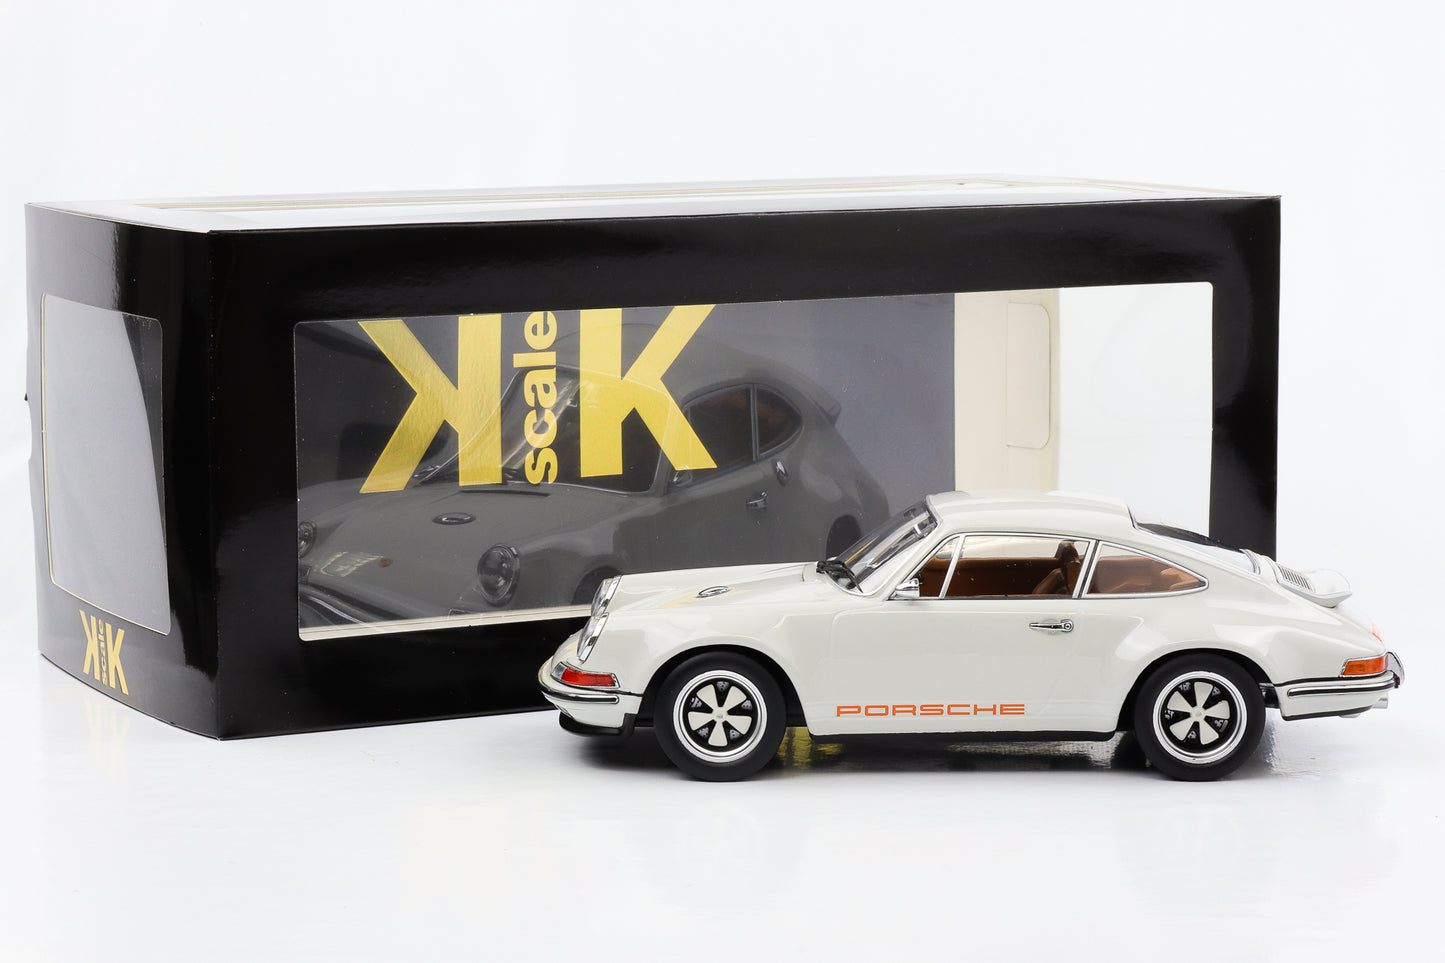 1:18 Porsche Singer 911 Coupe cinza fundido em escala KK